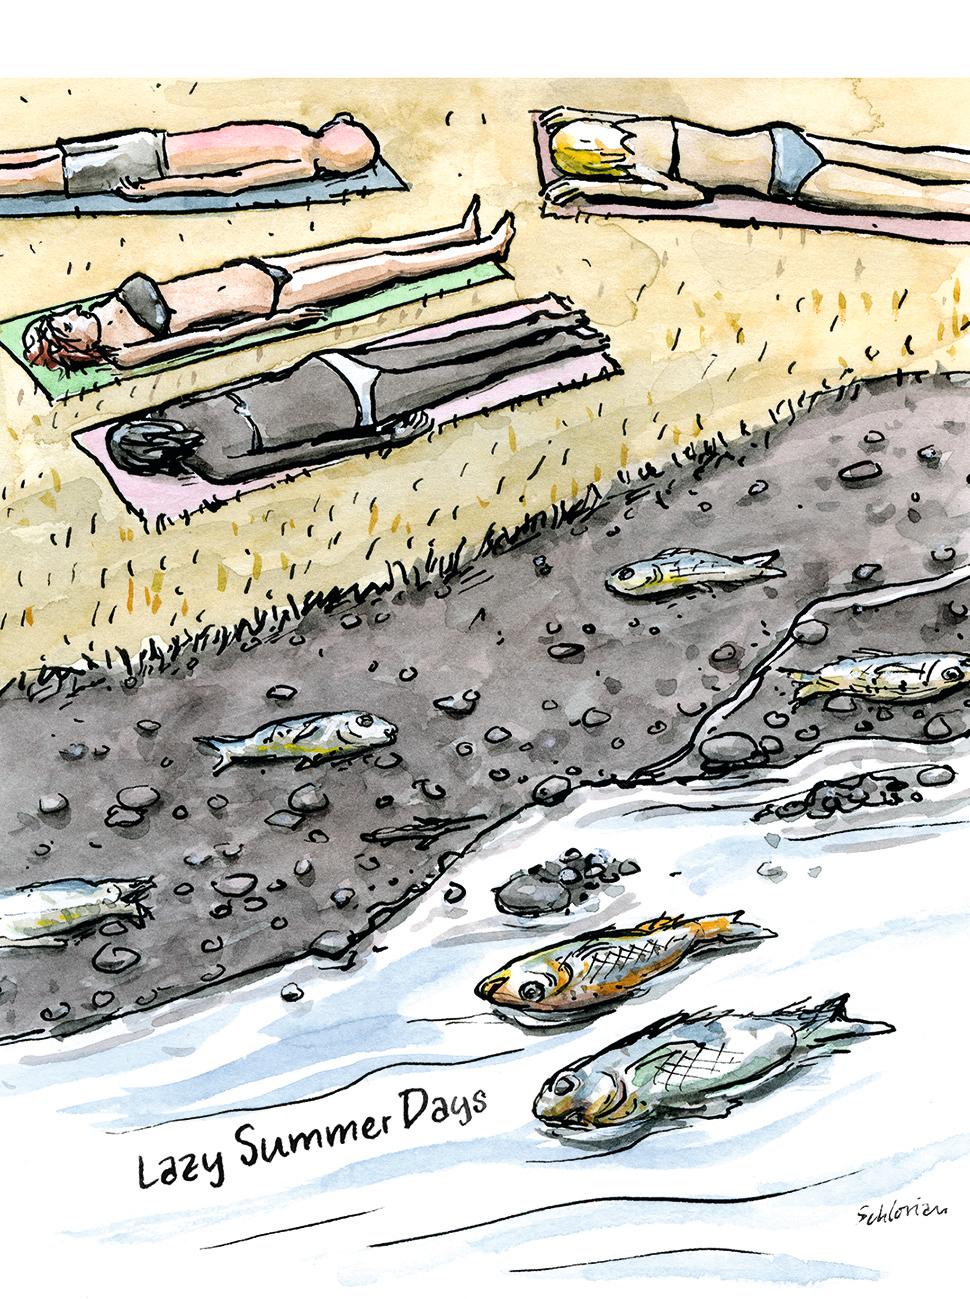 Hitzesommer: Sonnenbadende neben ausgetrocknetem Fluss mit toten Fischen